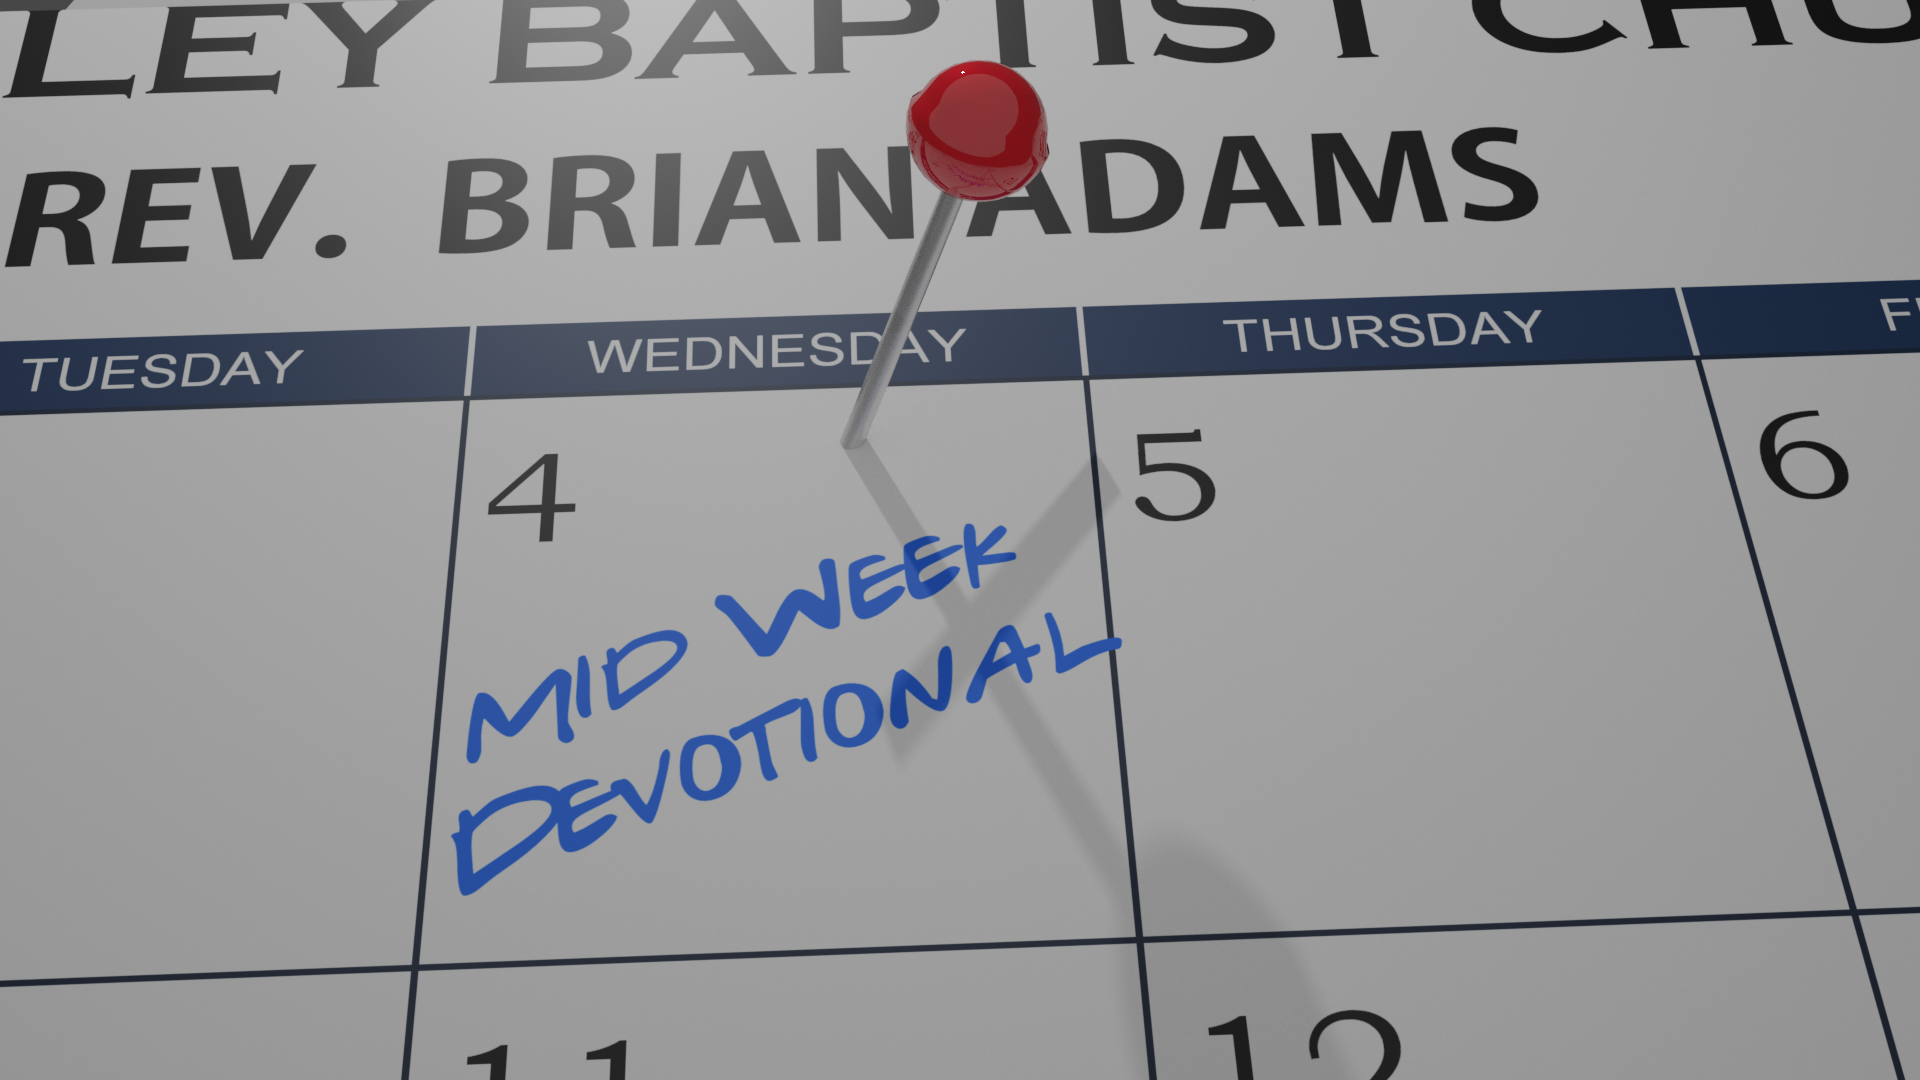 Mid-Week Devotional 10/28/20